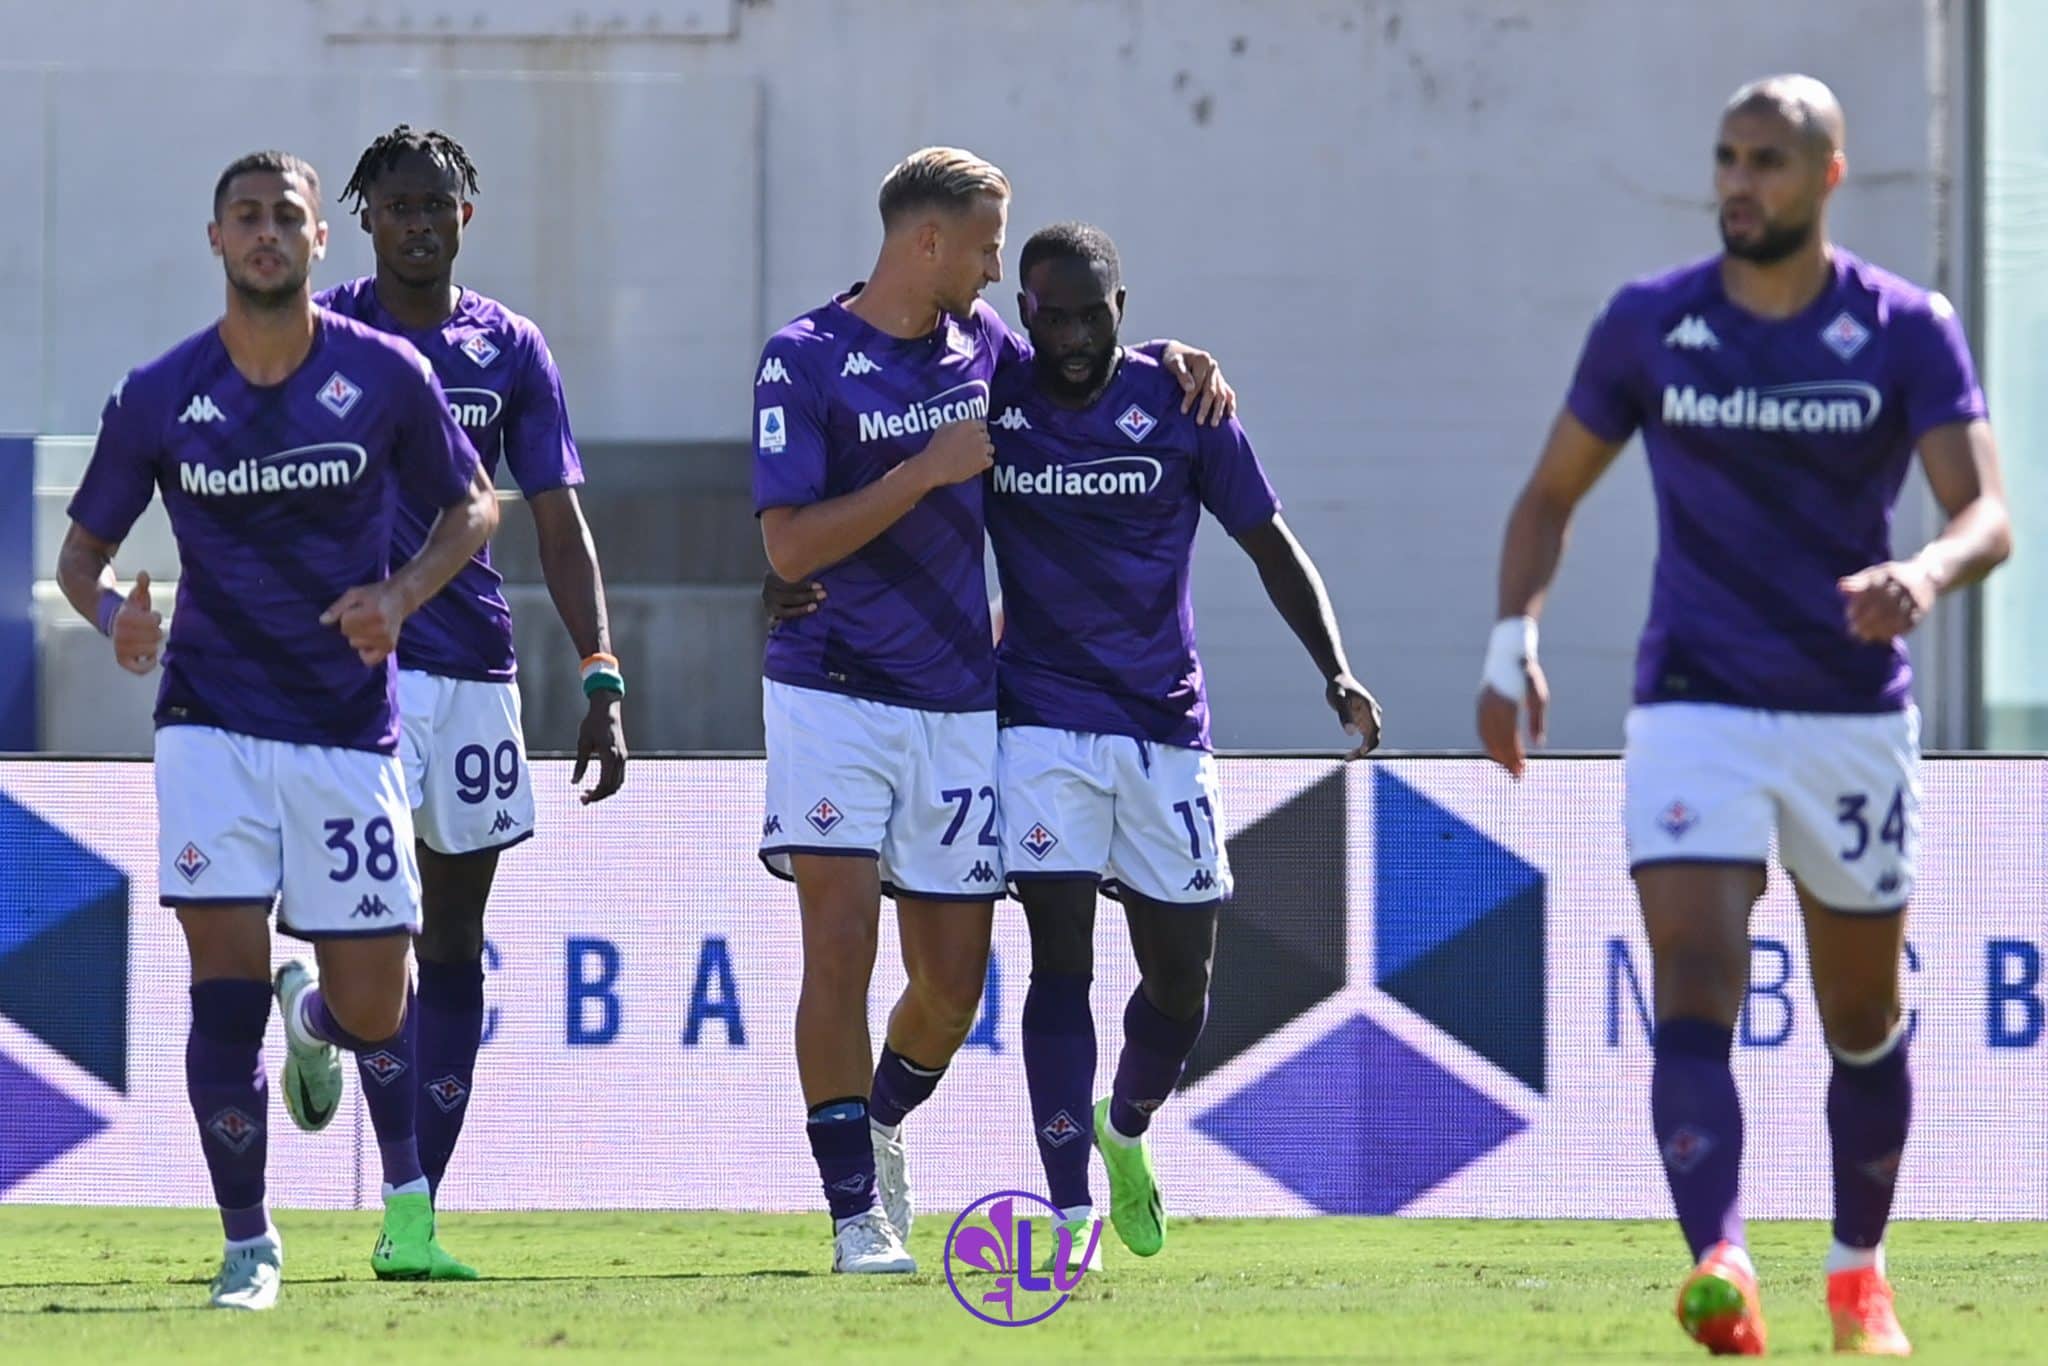 Florence sourit, la Fiorentina s&rsquo;impose 2-0 face à Vérone.  Ikoné et Gonzalez ont marqué